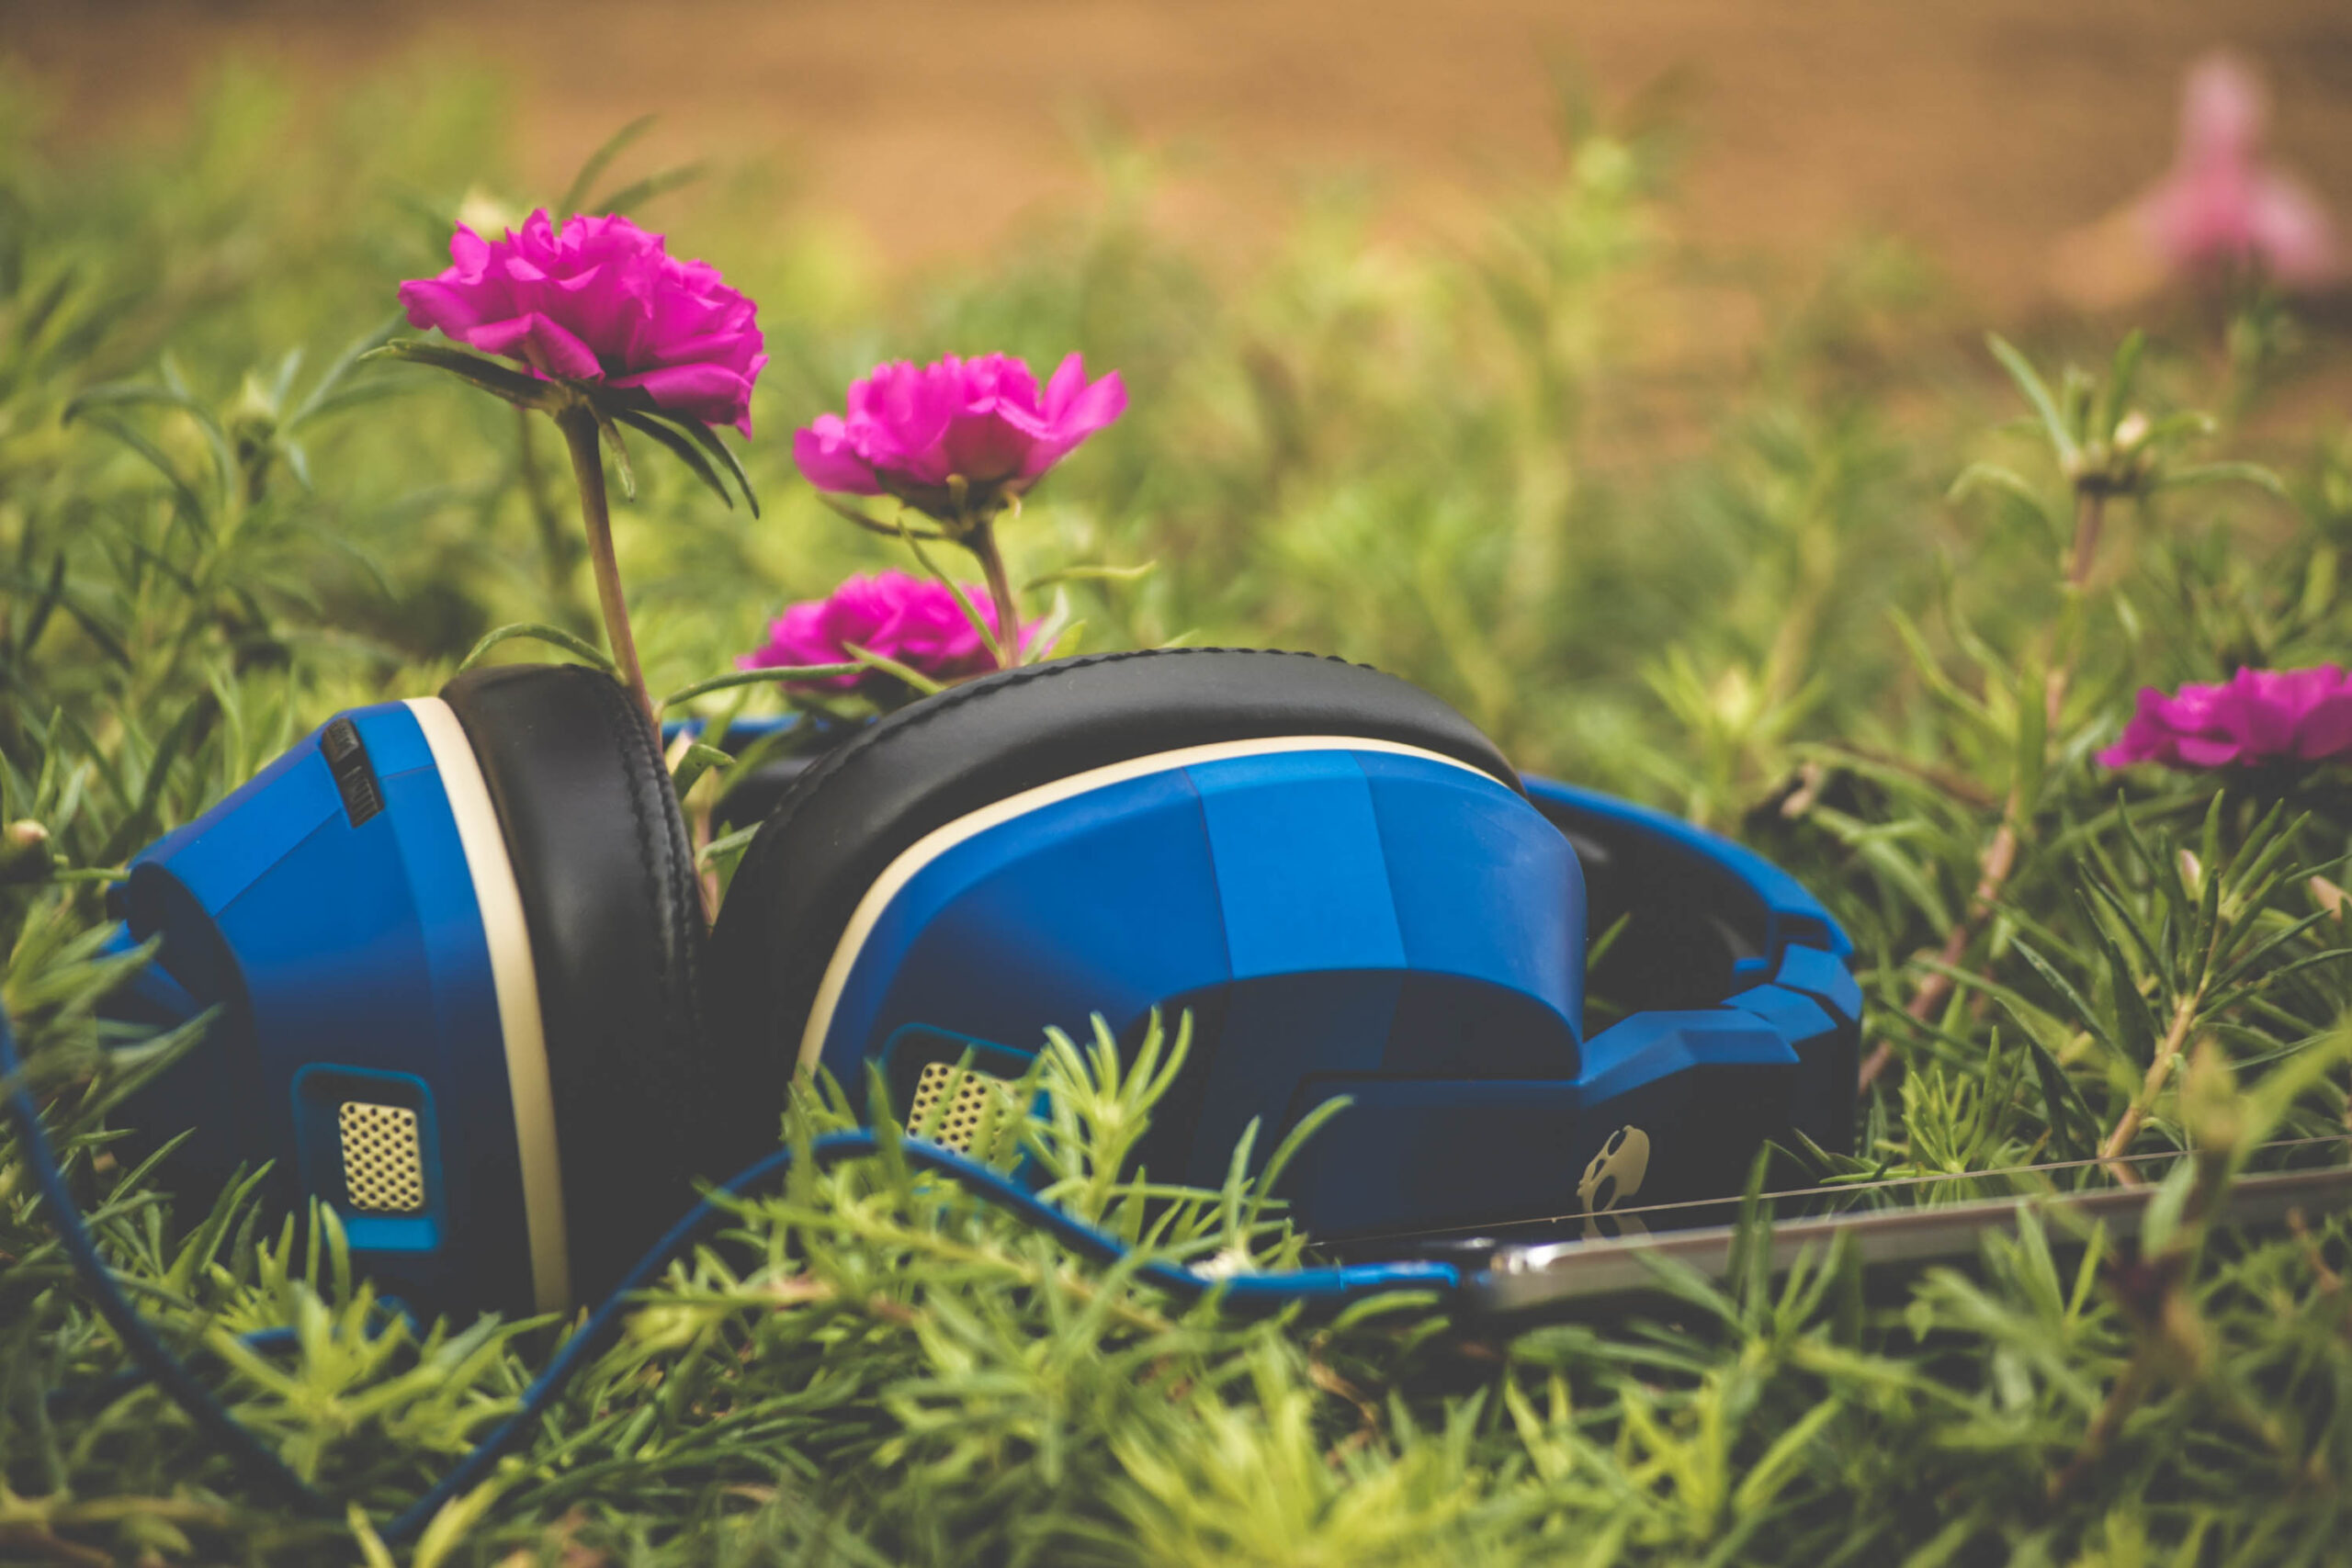 Flowering headphones